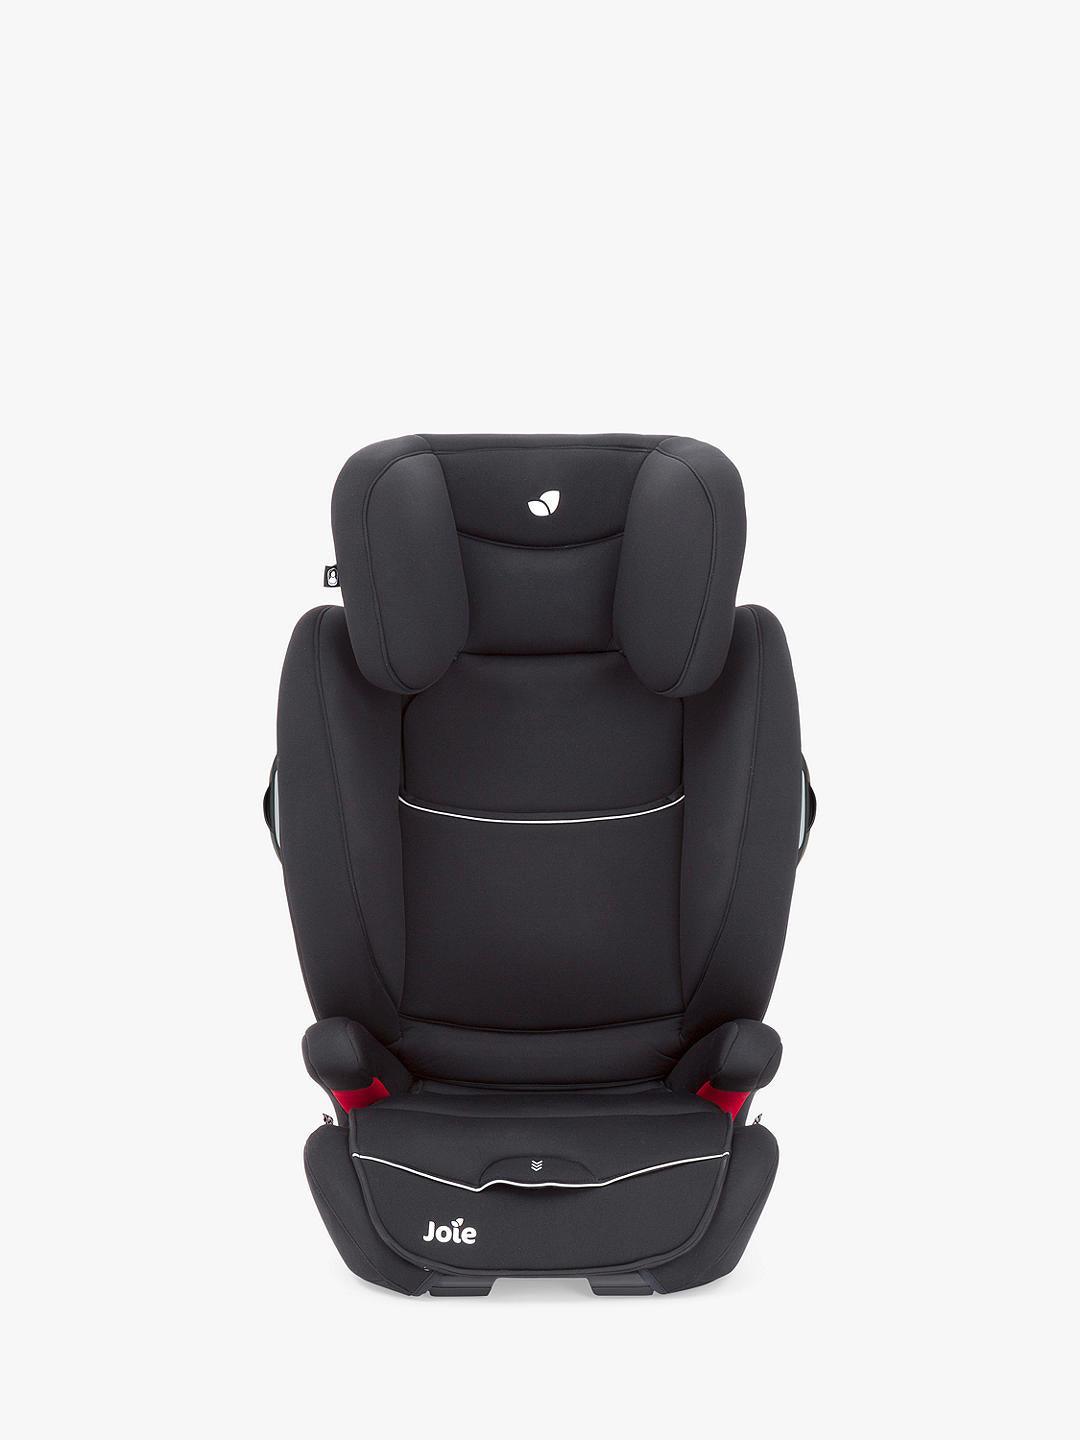 Joie Baby Duallo Group 2/3 Car Seat, Tuxedo Black